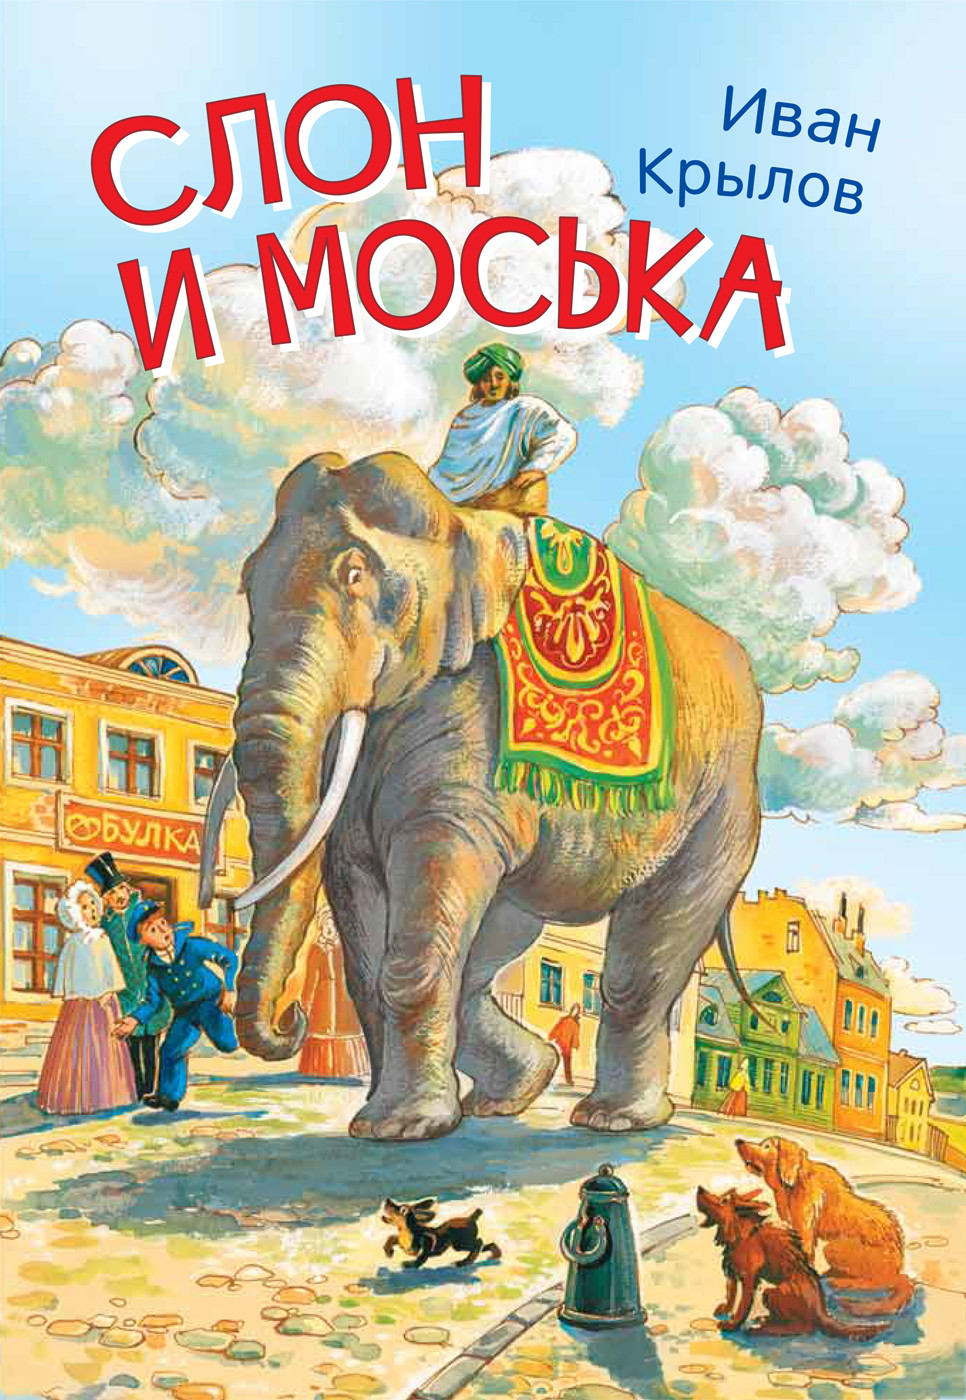 Крылов Иван Андреевич Слон и моська. Басни слон he8056 моська в коробке